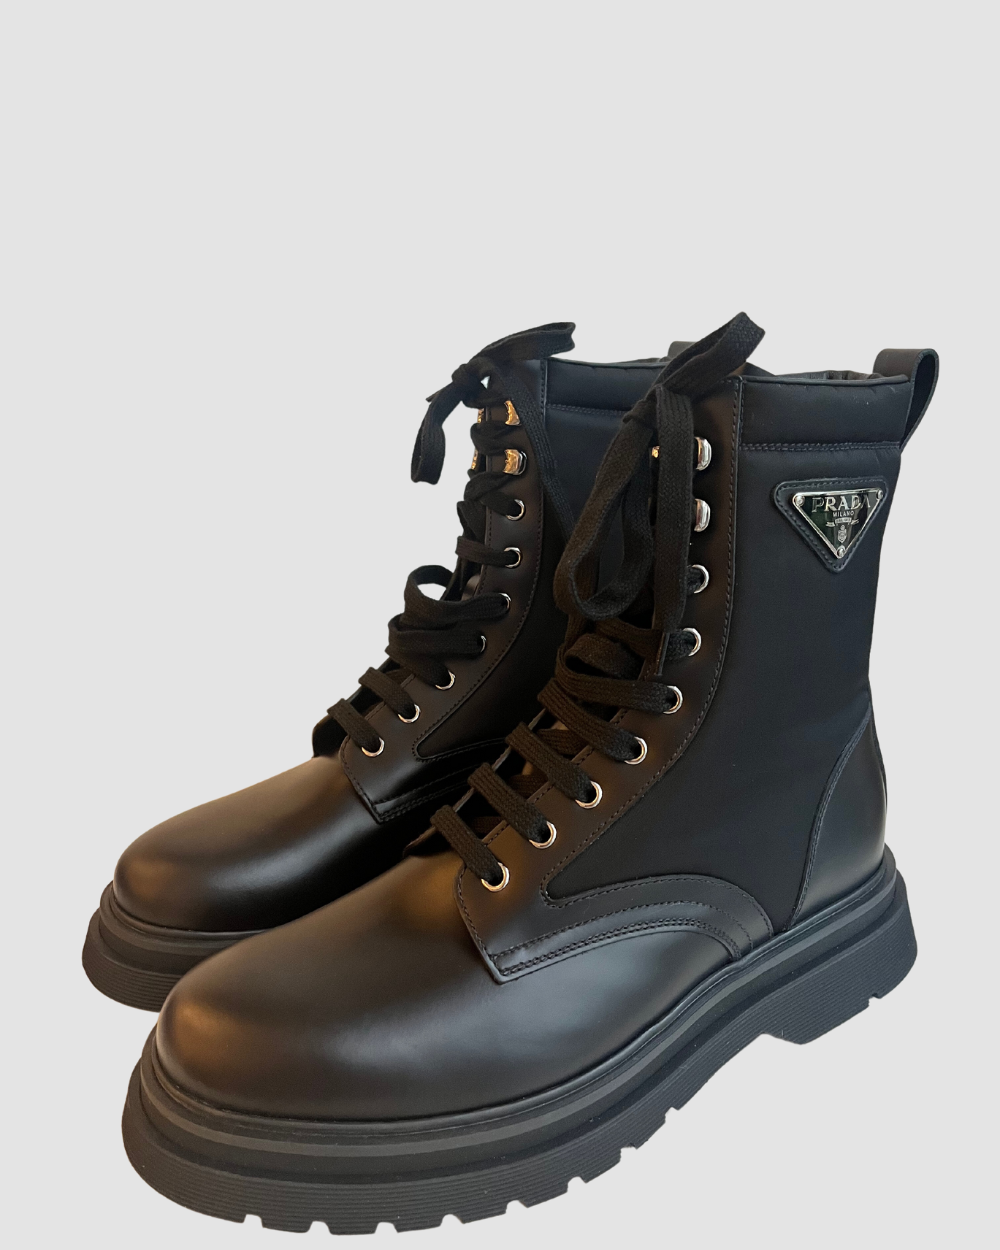 Prada Black Leather & Nylon Combat Boots